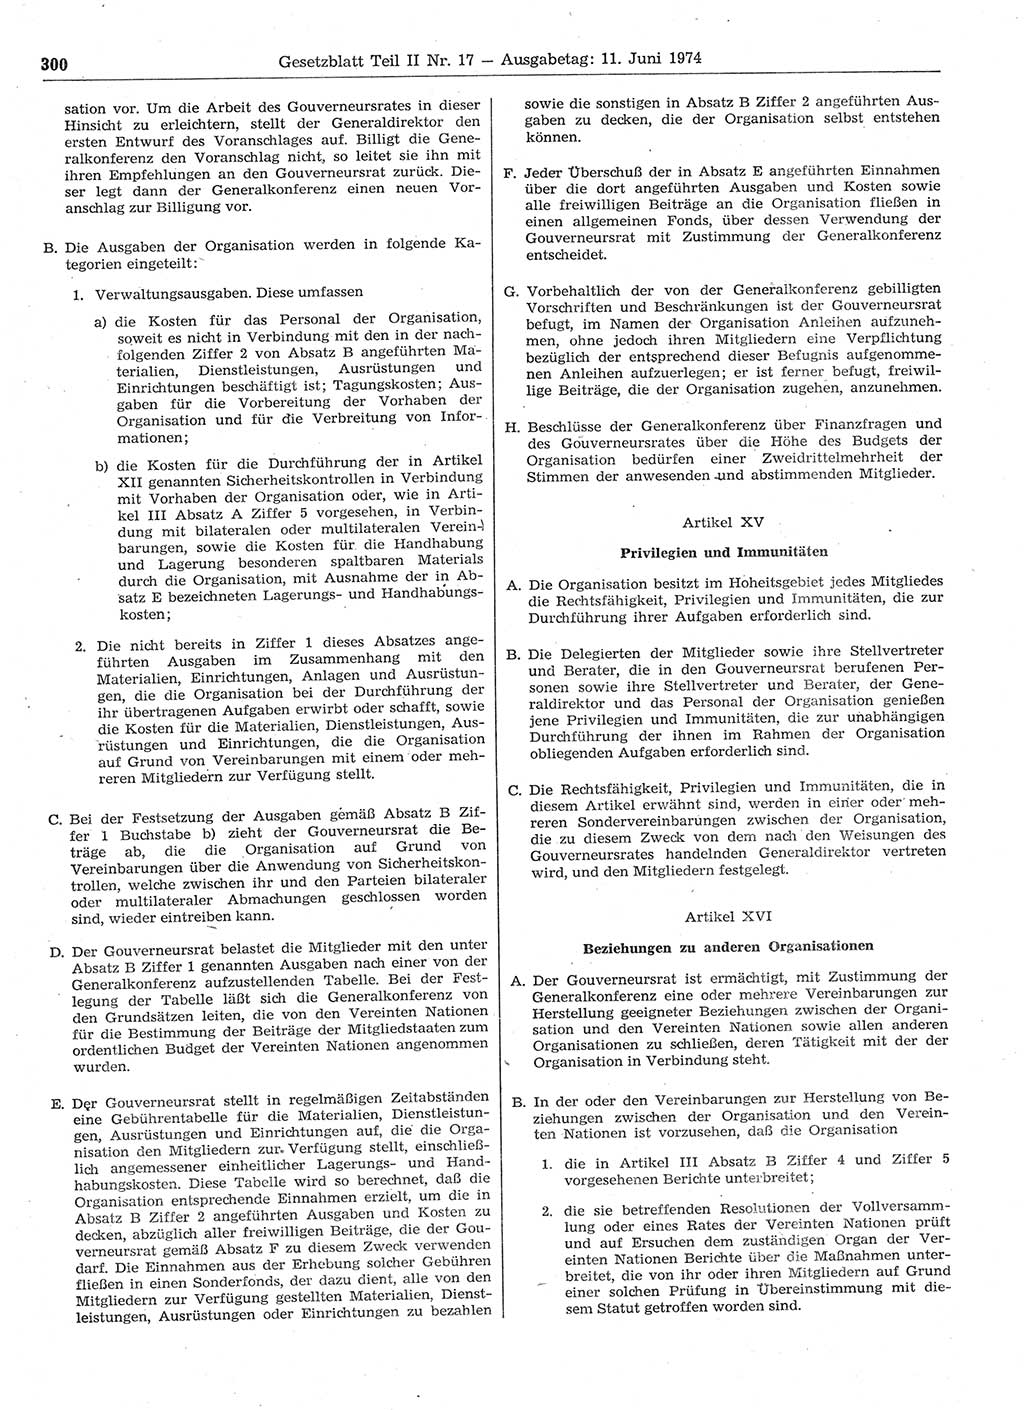 Gesetzblatt (GBl.) der Deutschen Demokratischen Republik (DDR) Teil ⅠⅠ 1974, Seite 300 (GBl. DDR ⅠⅠ 1974, S. 300)